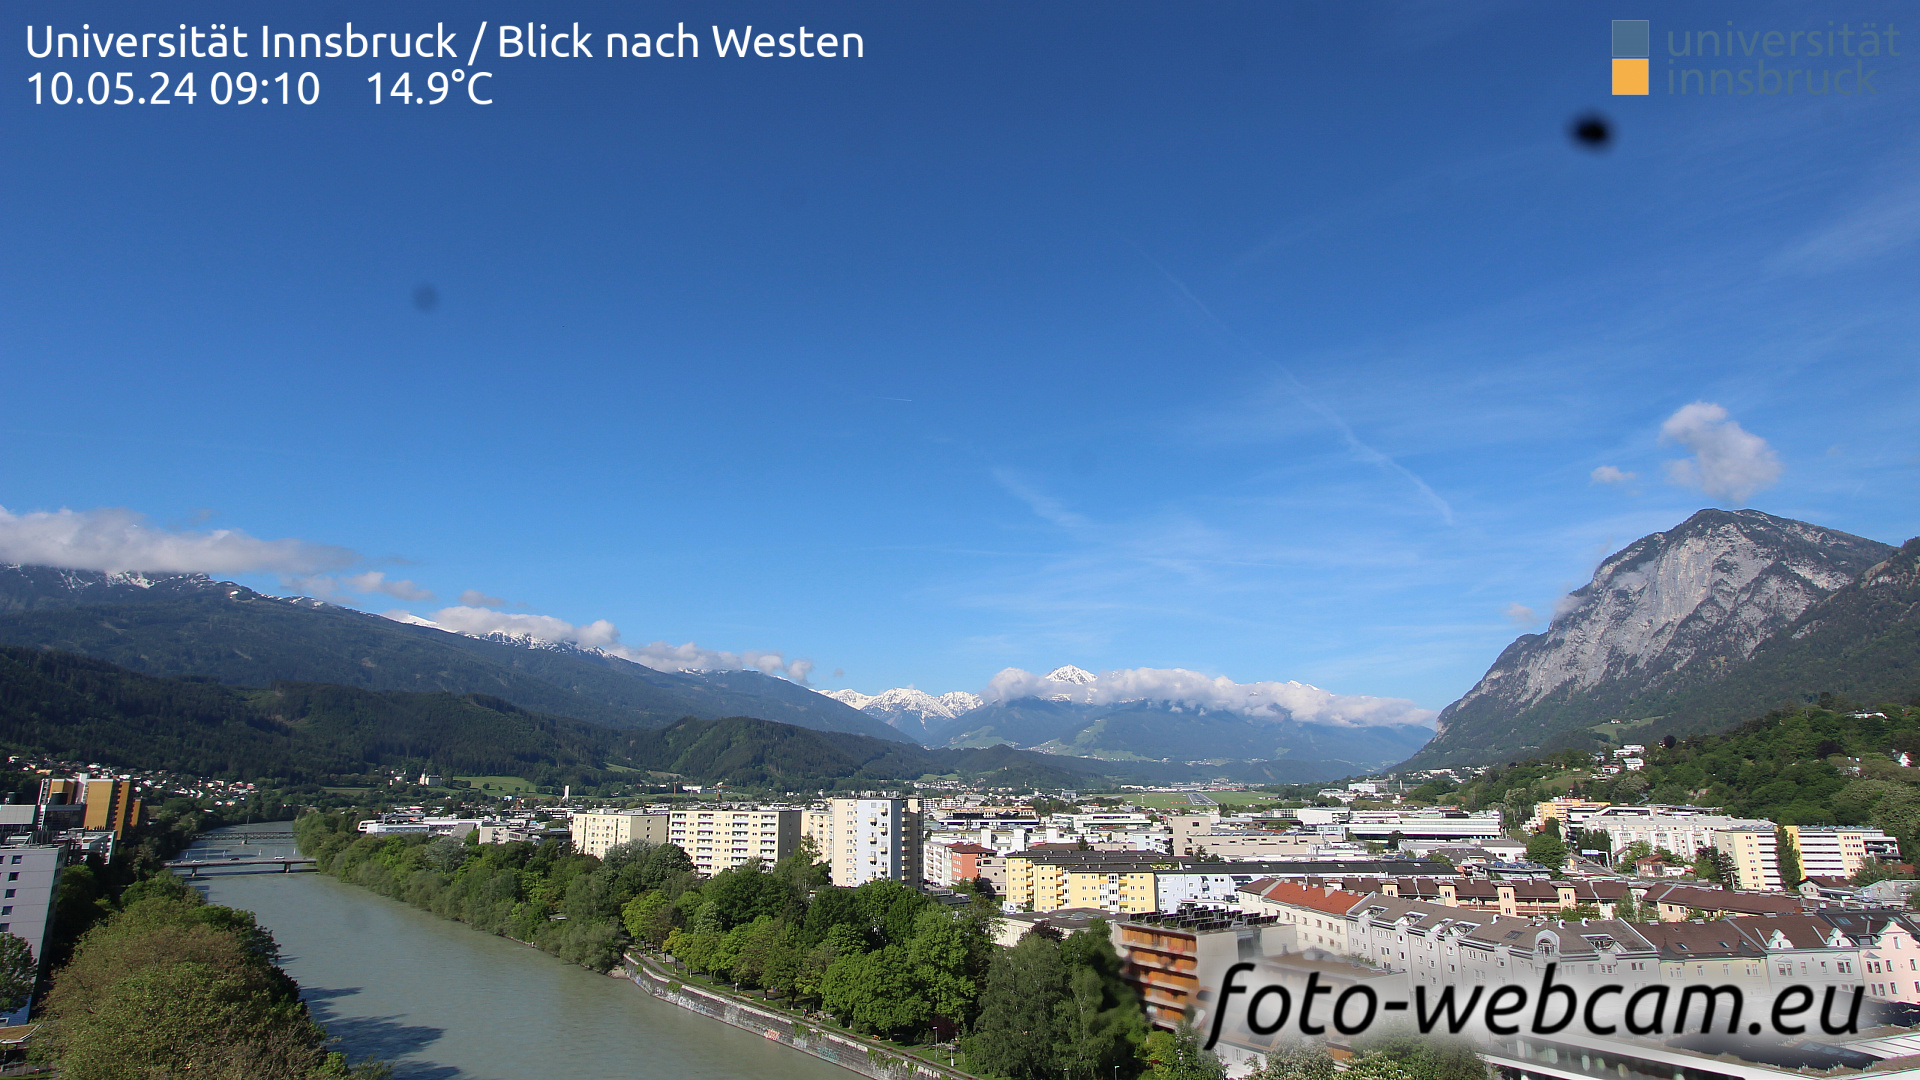 Innsbruck Dom. 09:17